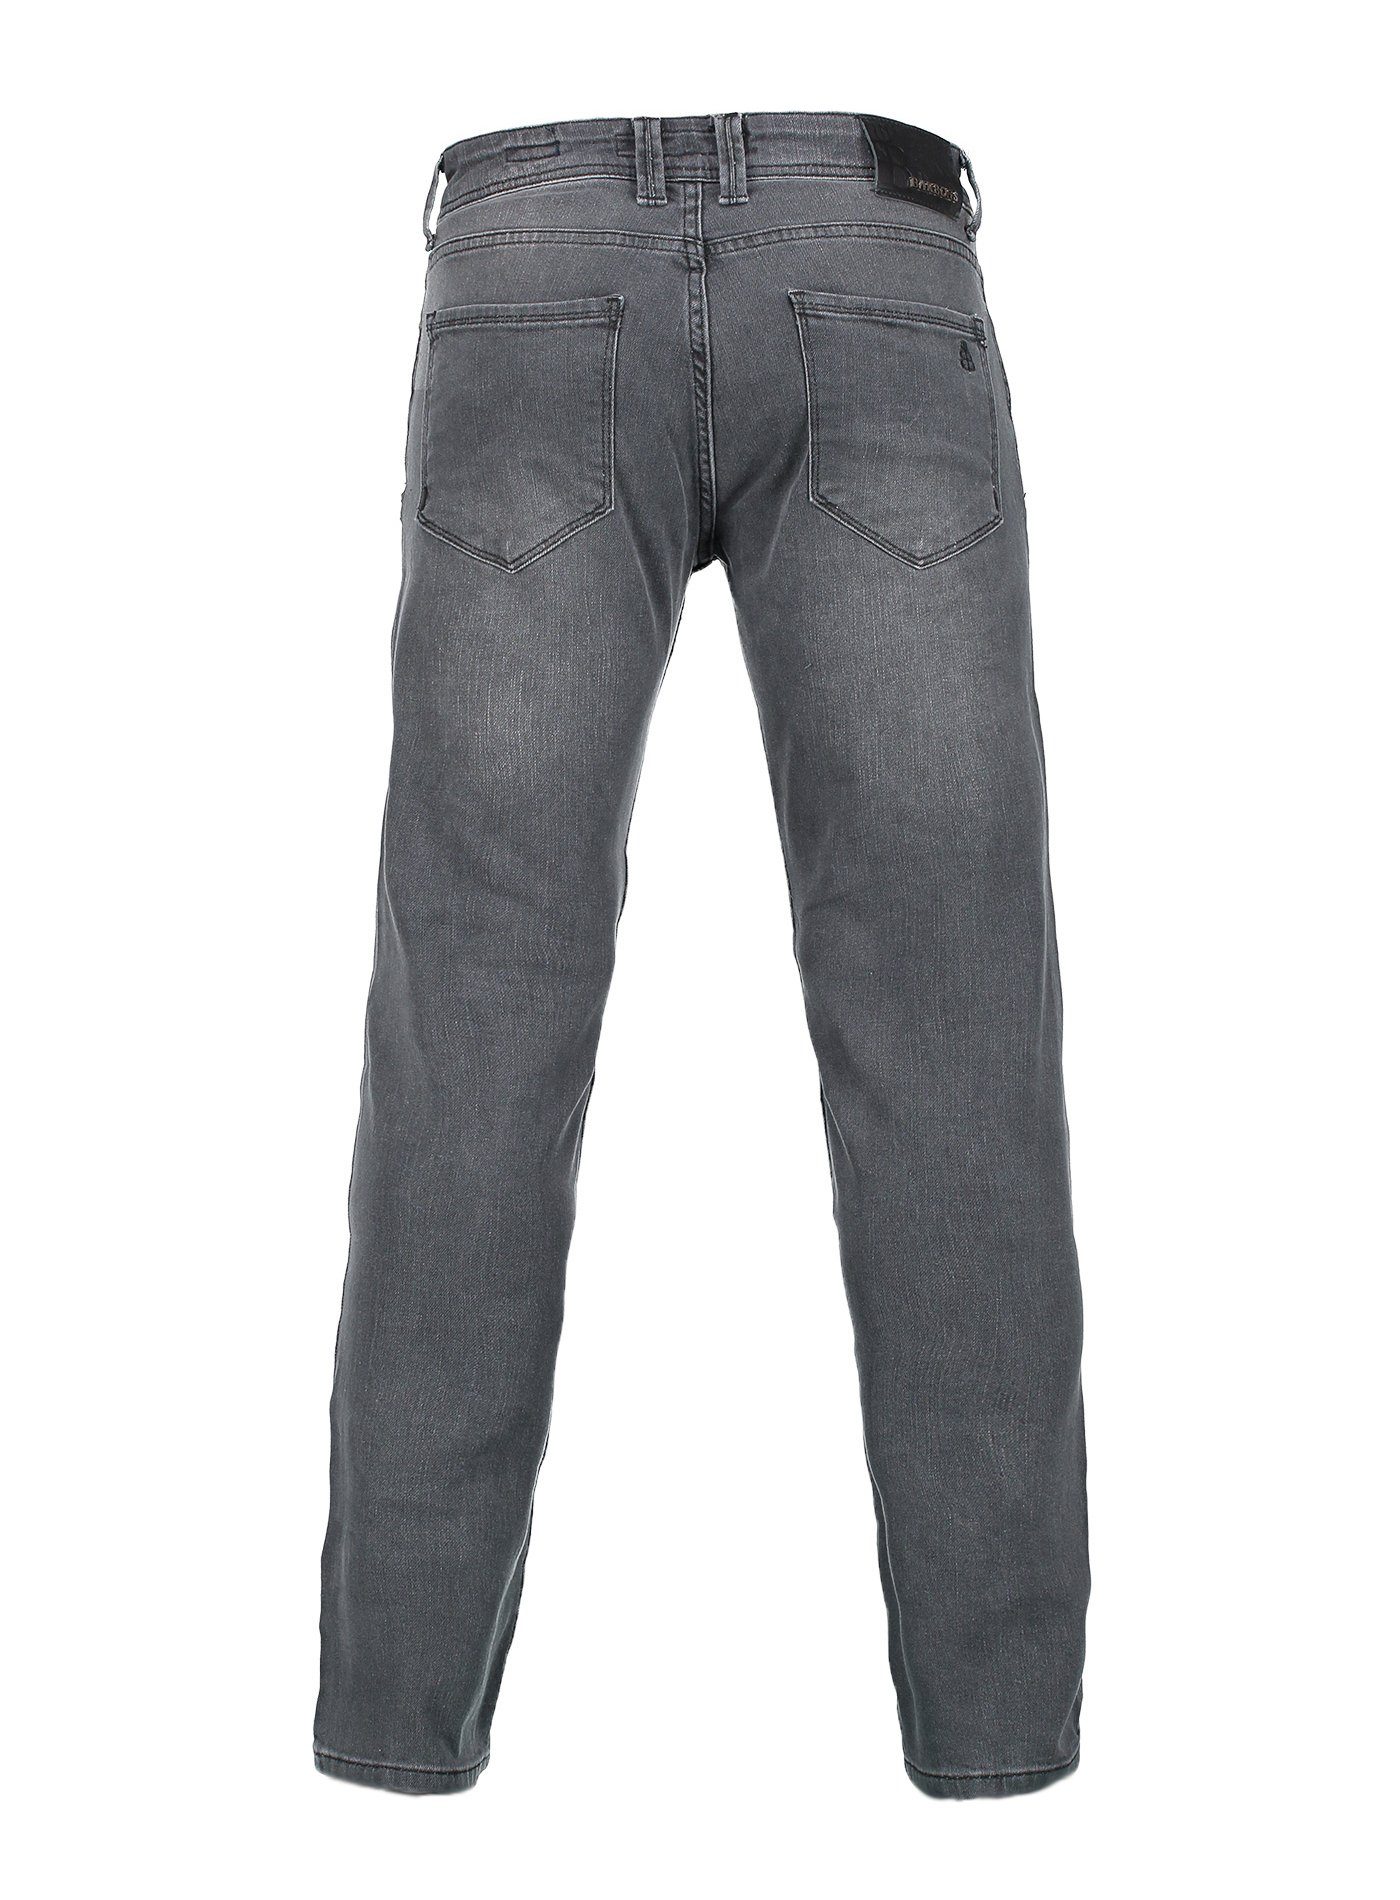 Fit BARBONS Herren 5-Pocket 5-Pocket-Jeans Design Regular 04-Grau